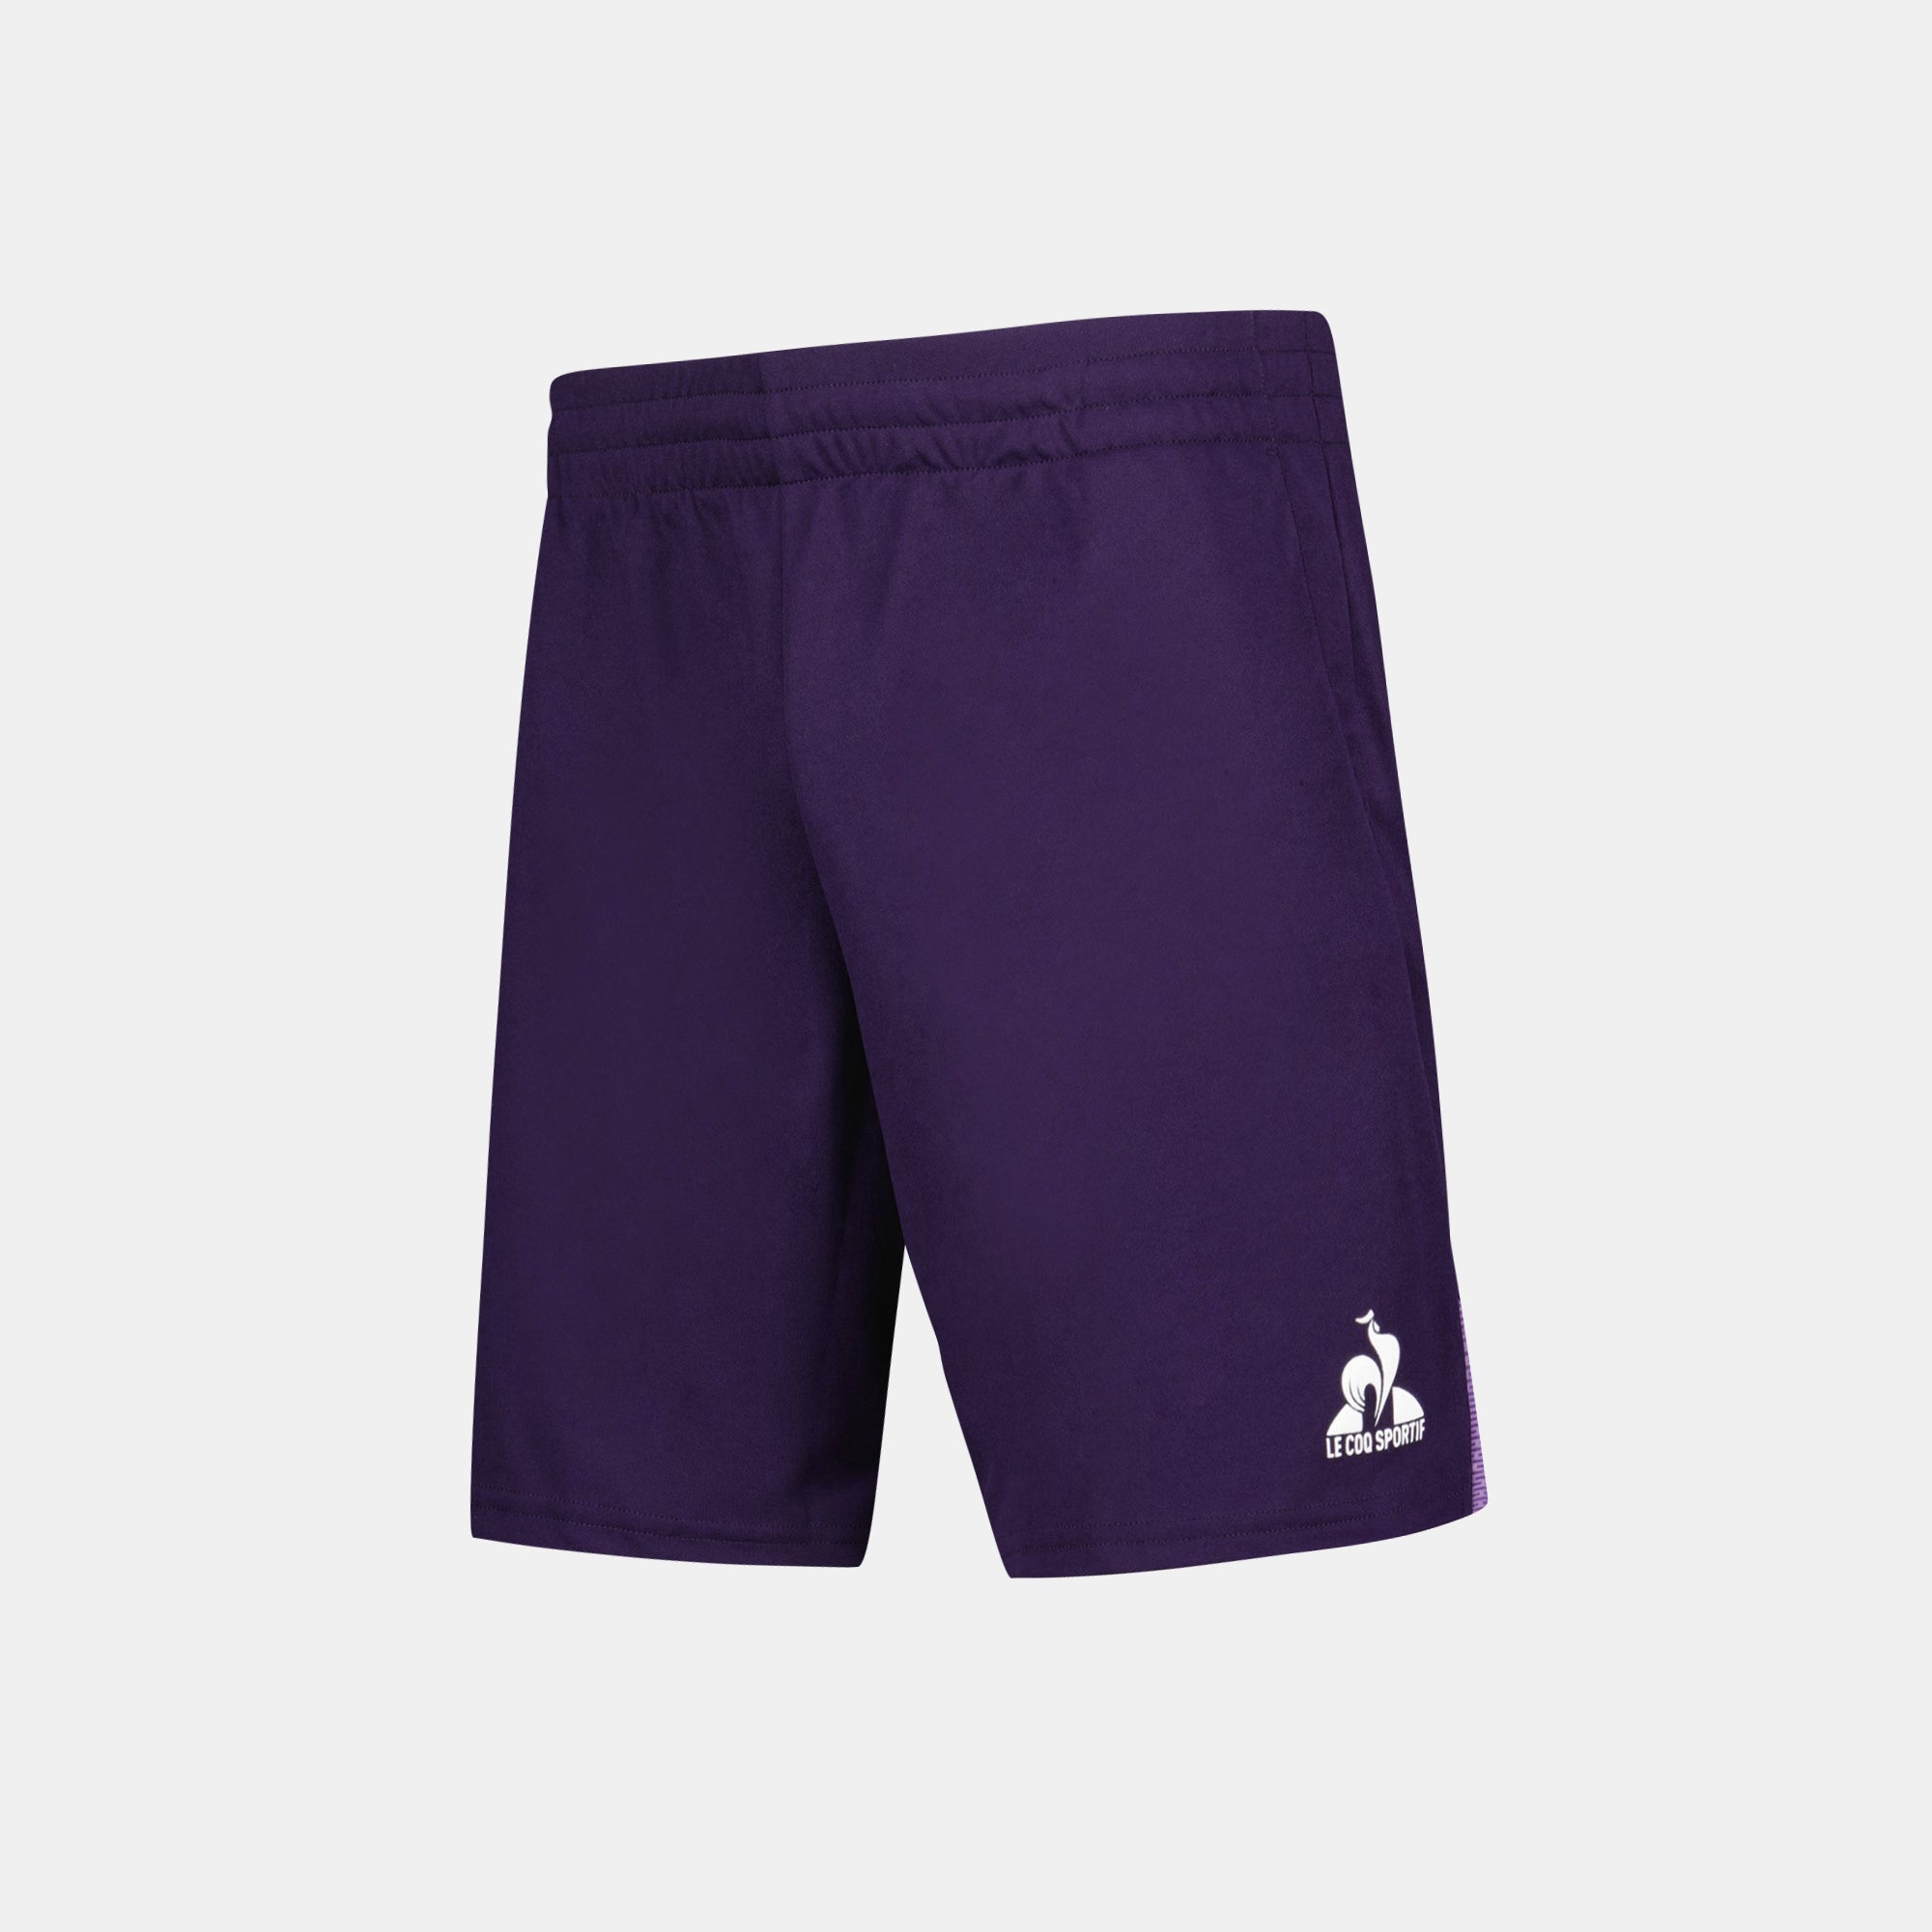 2410519-TENNIS PRO Short 24 N°1 M purple velvet  | Shorts für Herren